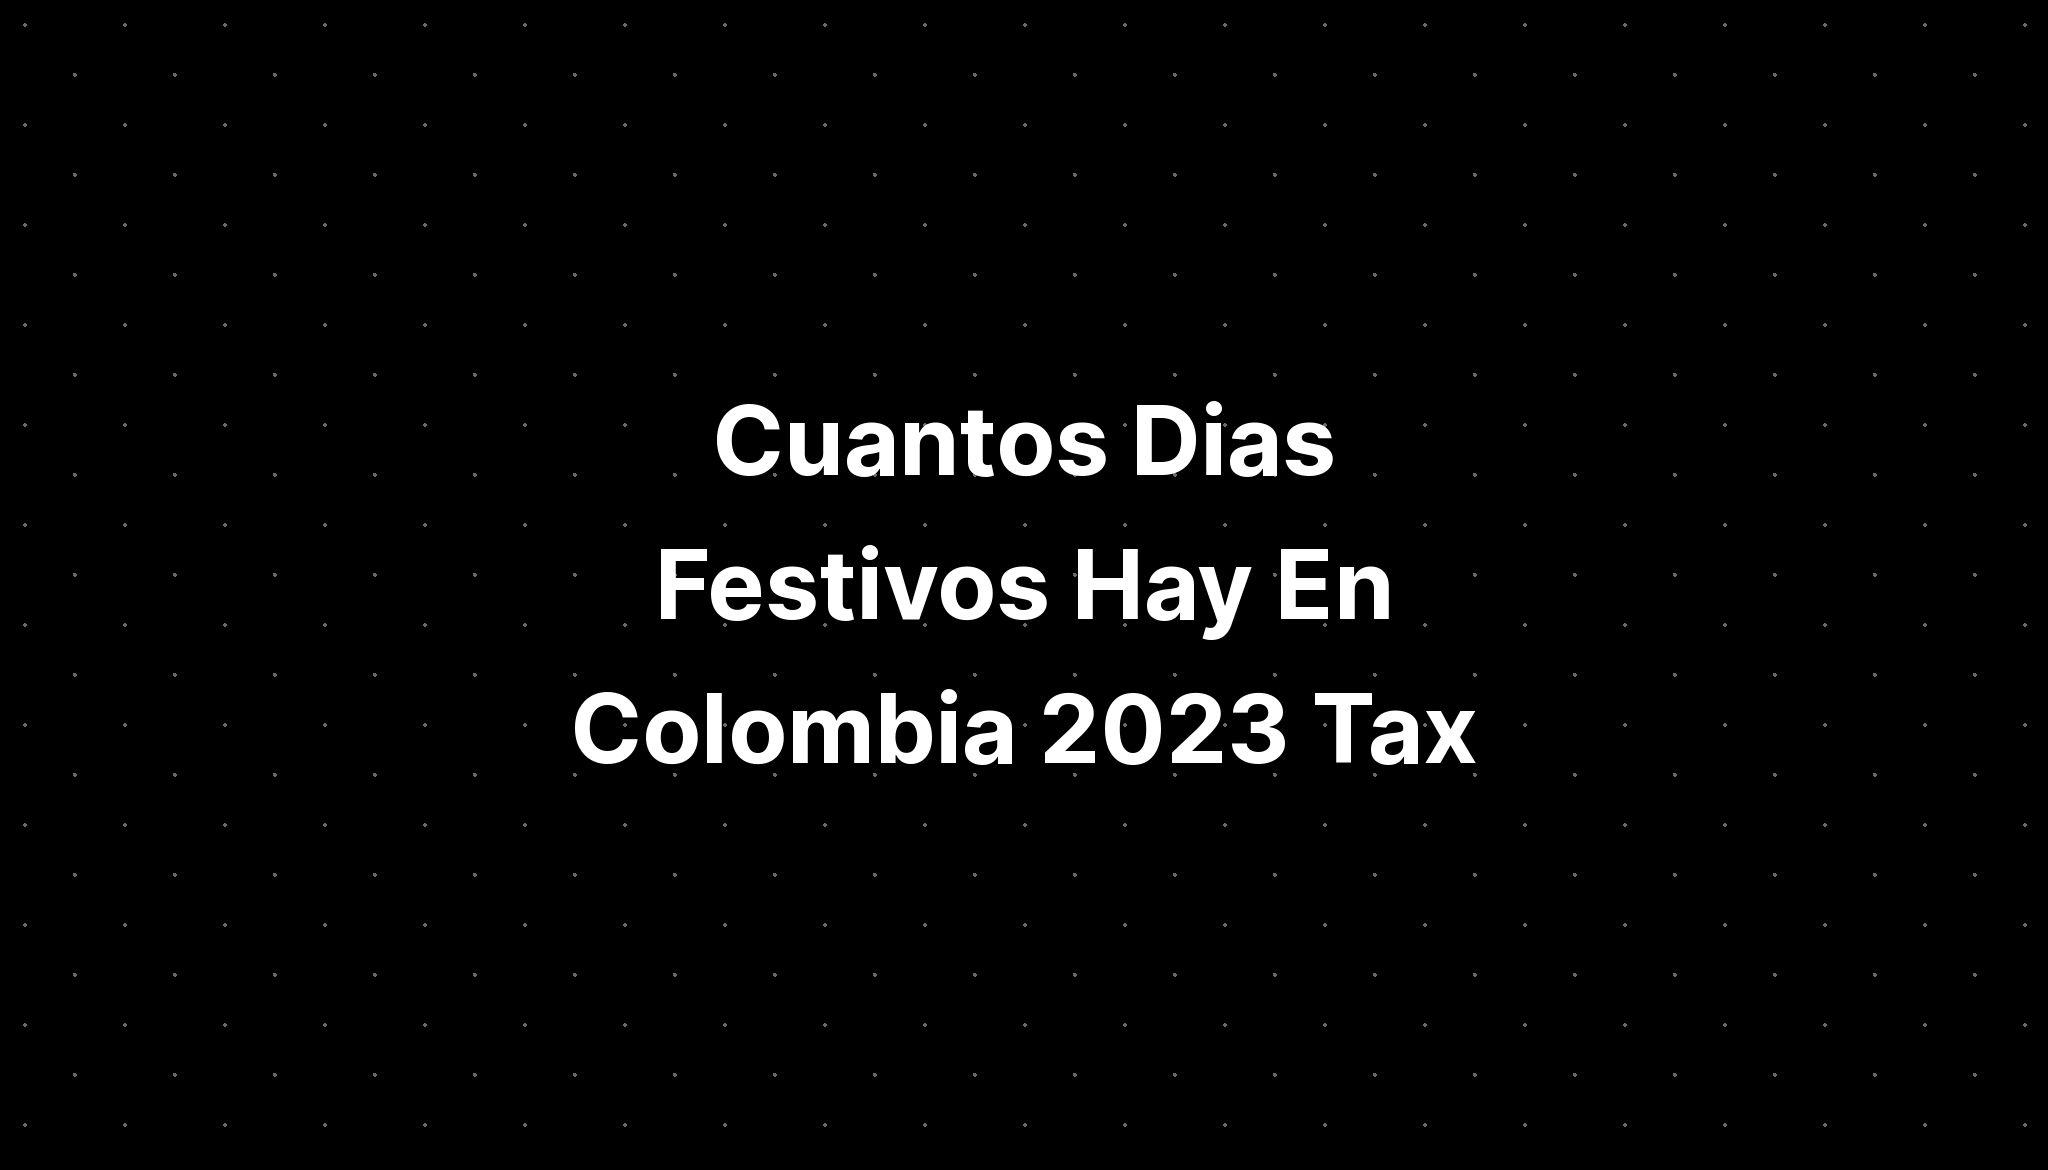 Cuantos Dias Festivos Hay En Colombia 2023 Tax Credits IMAGESEE